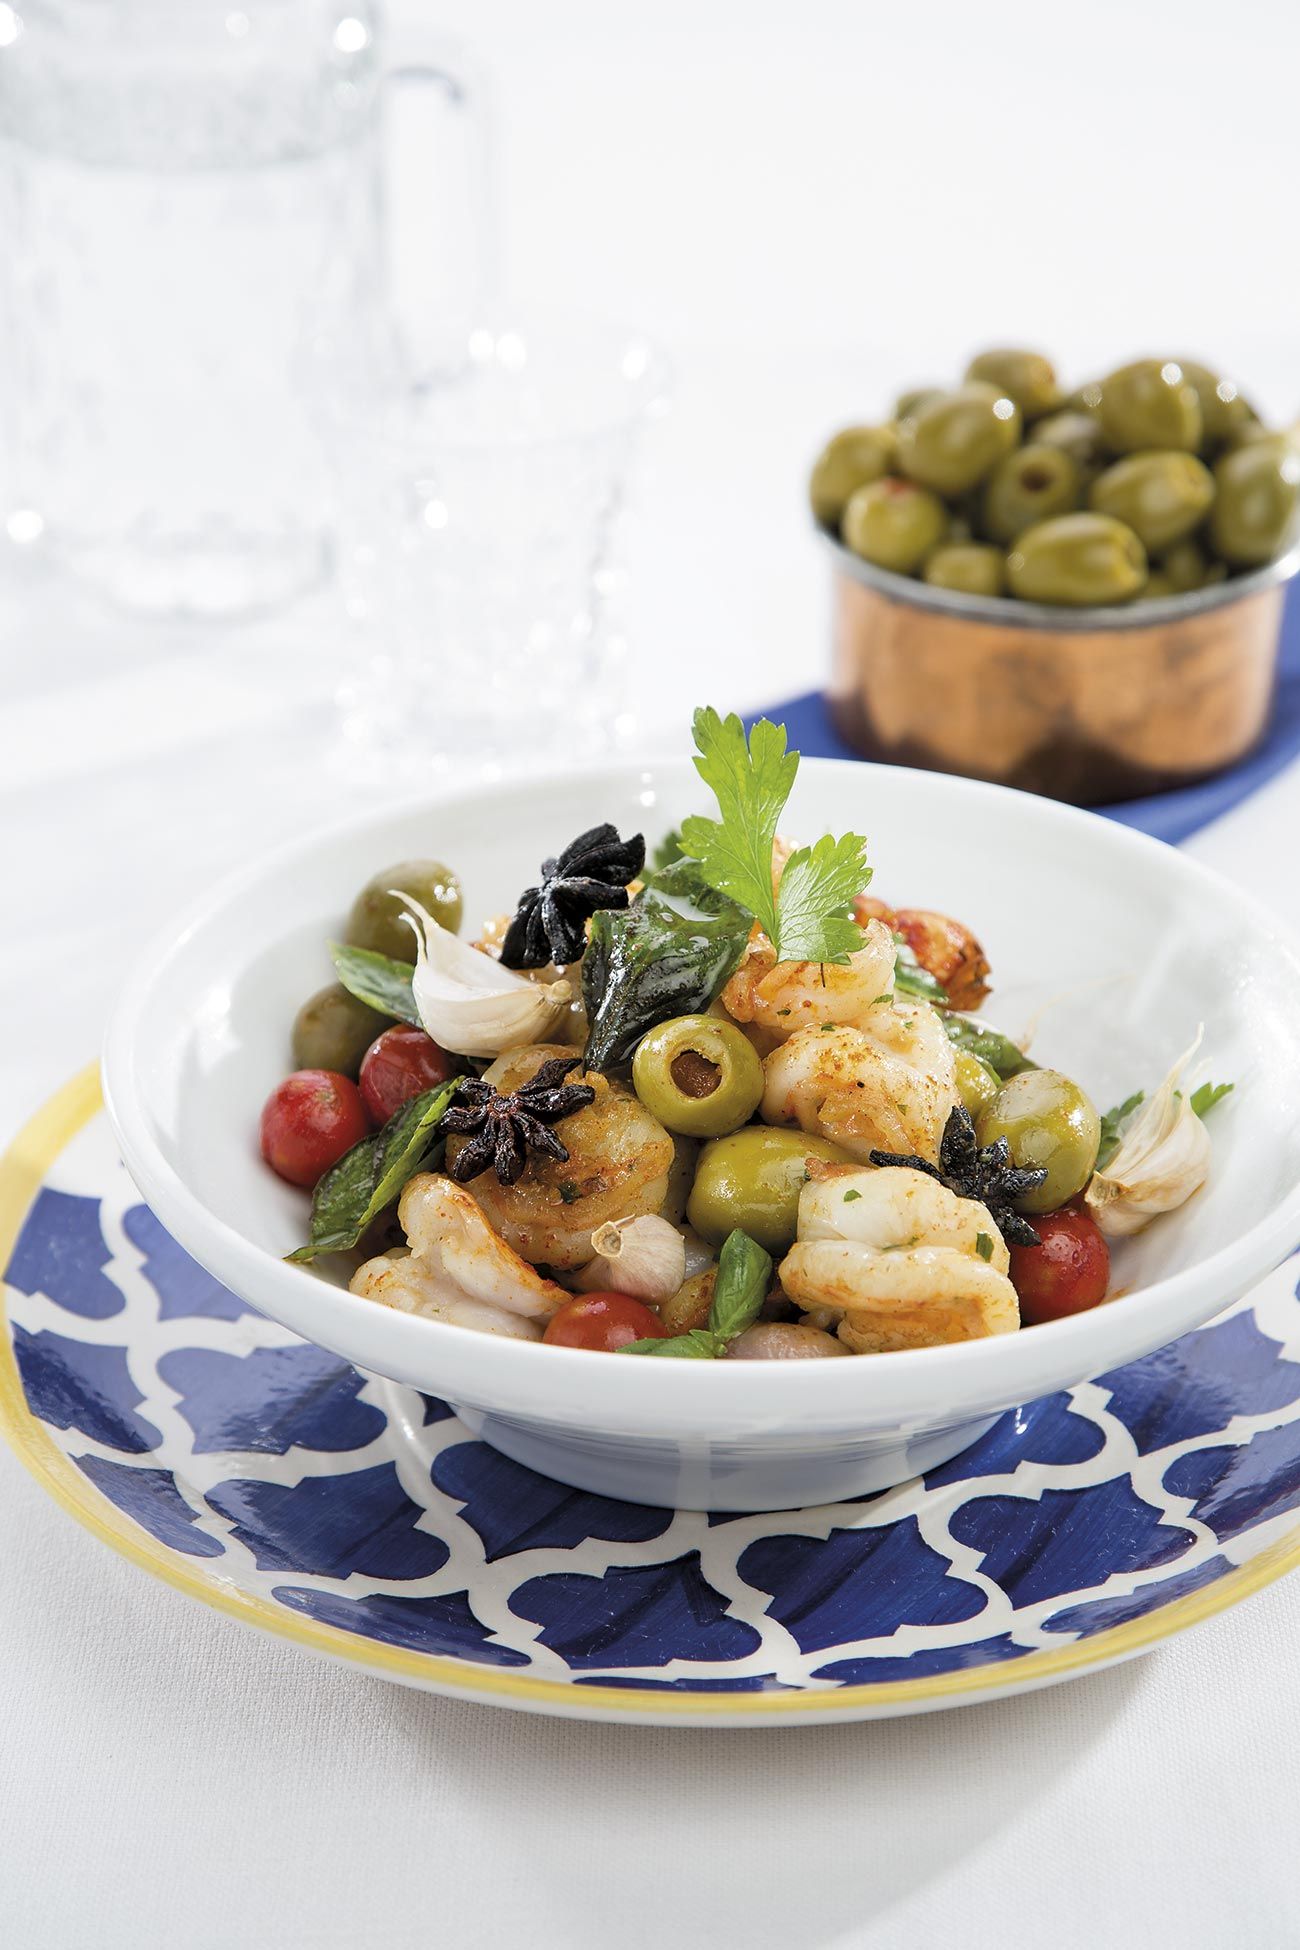 Dieta mediterránea: 25 recetas saludables y fáciles